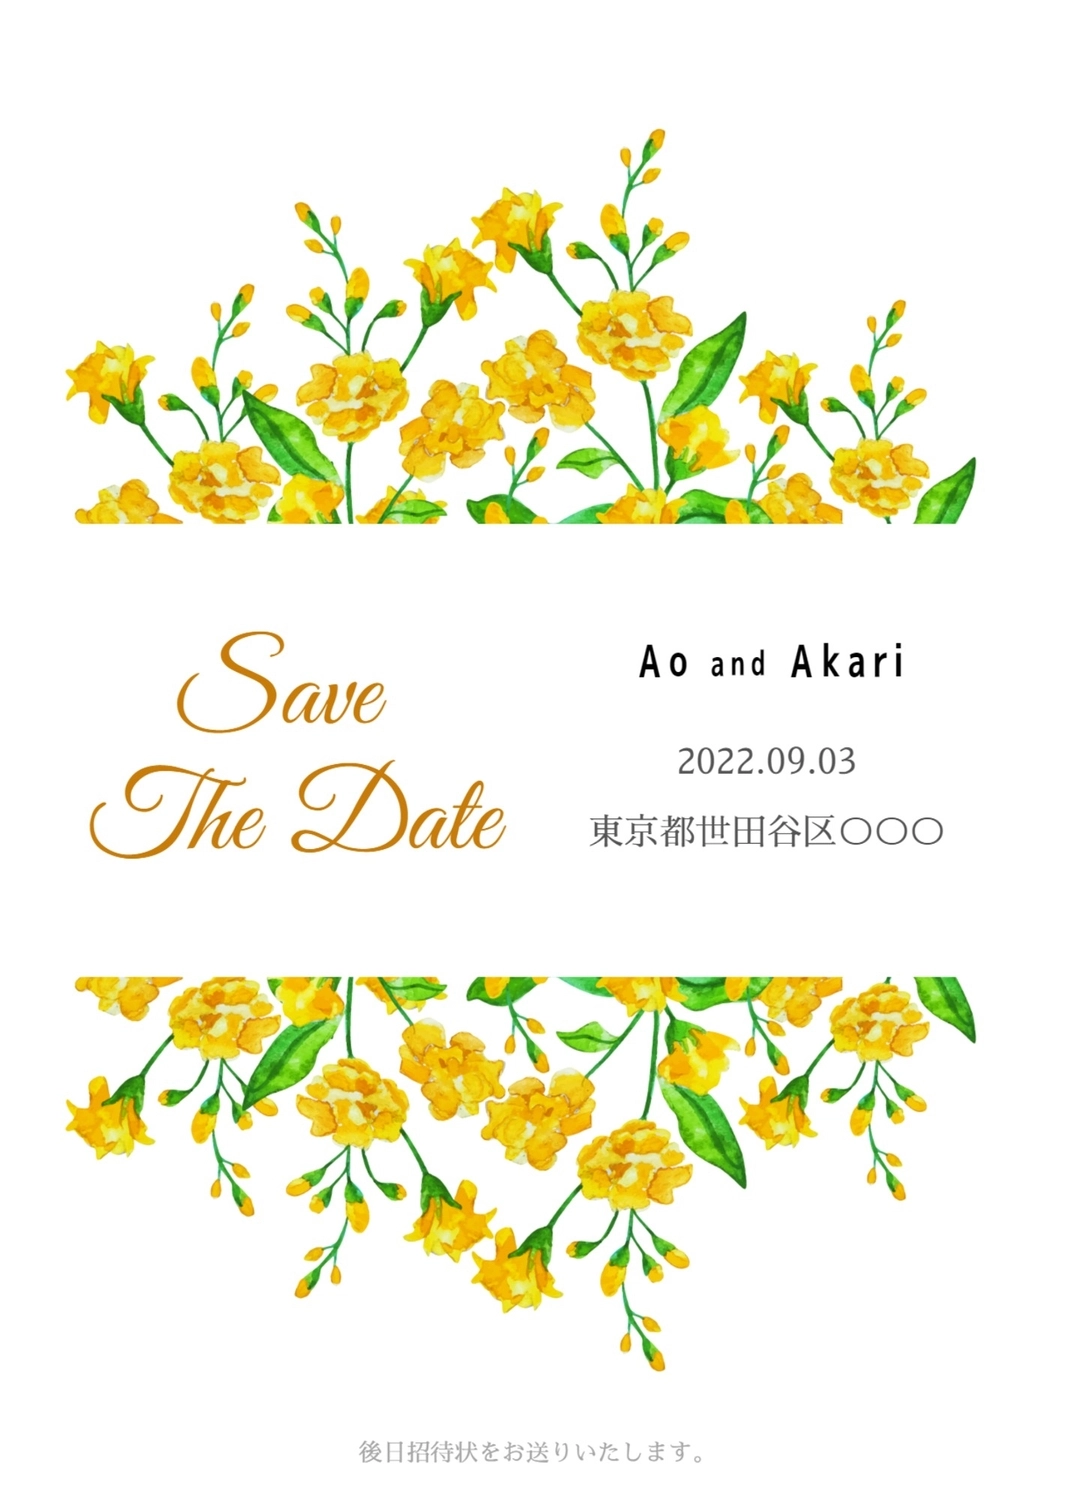 黄色い花のウェディングカード, イラスト, 作成, デザイン, ウェディングカードテンプレート